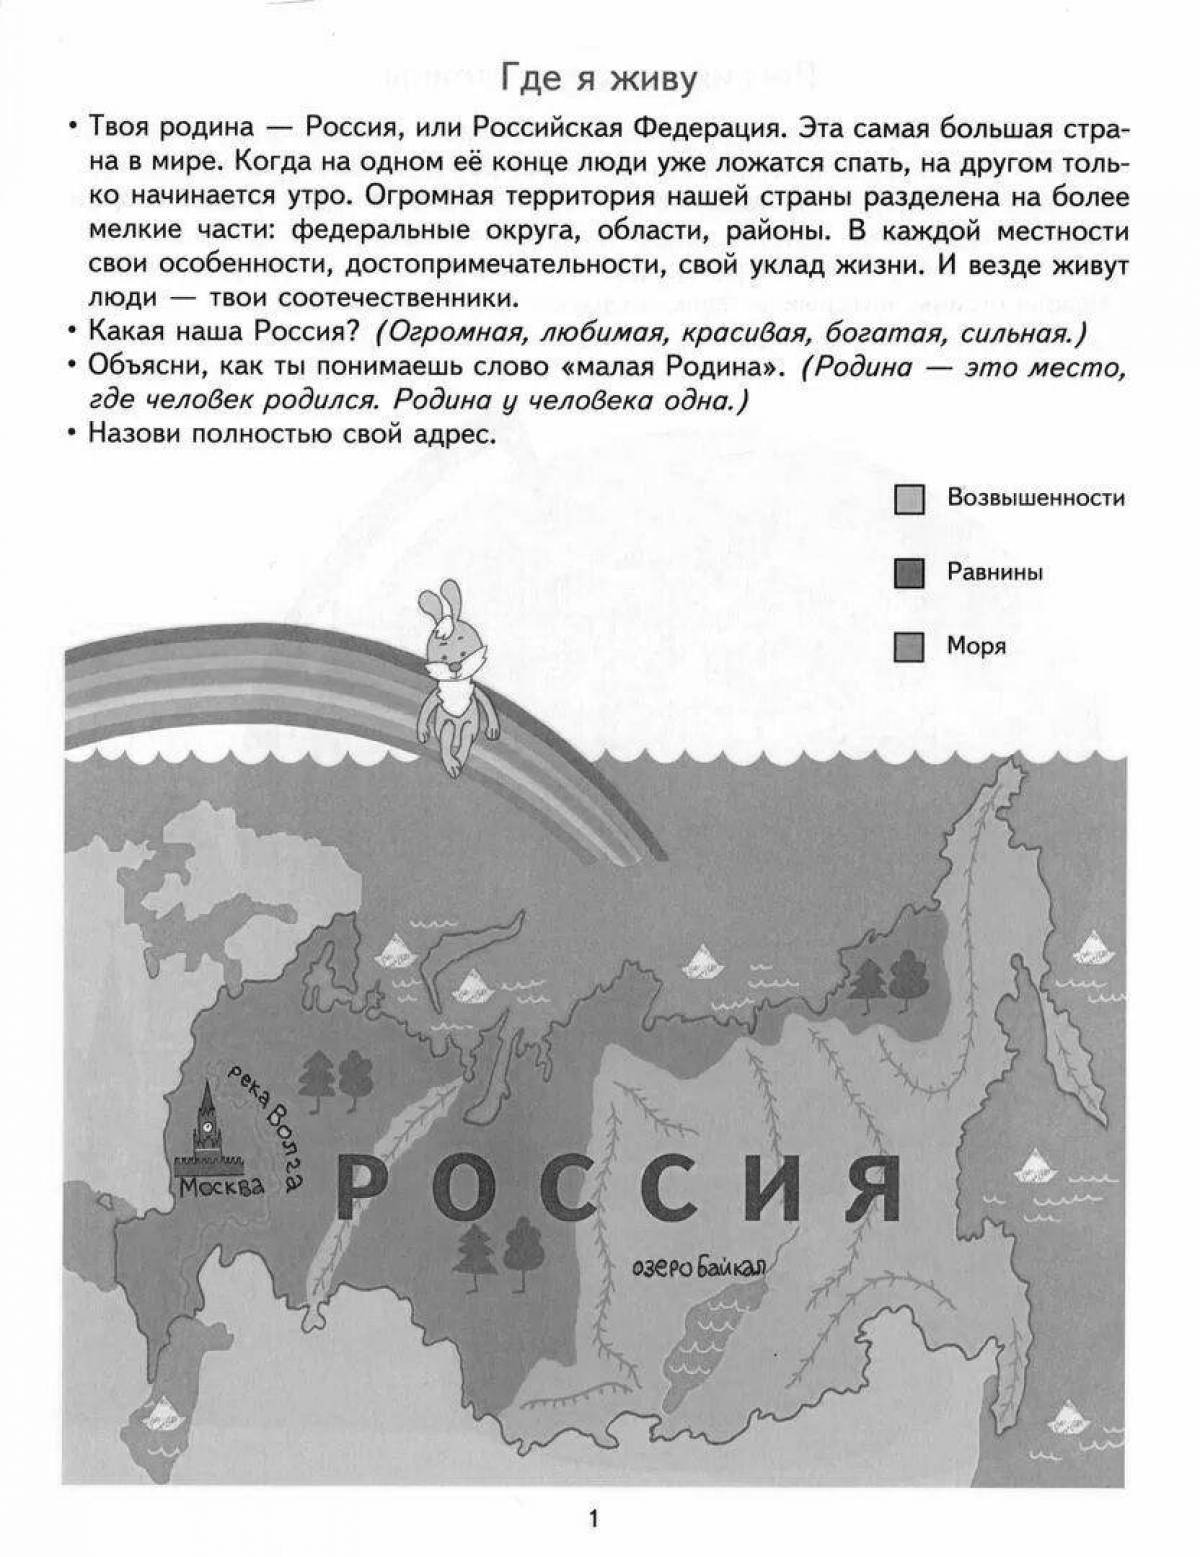 Map of Russia for preschool children #2